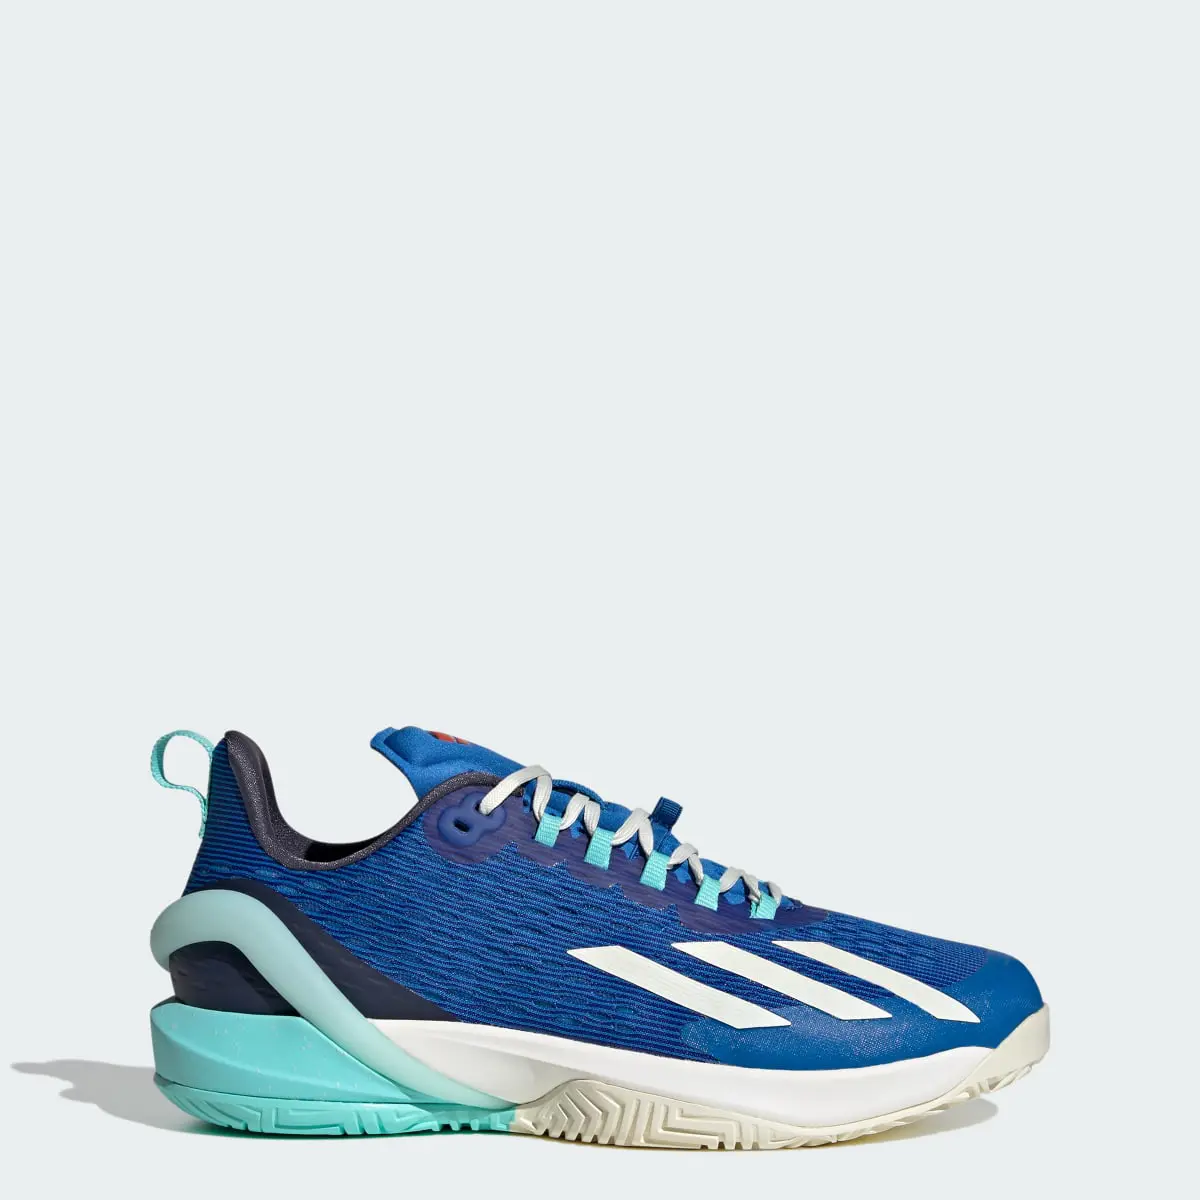 Adidas adizero Cybersonic Tennis Shoes. 1